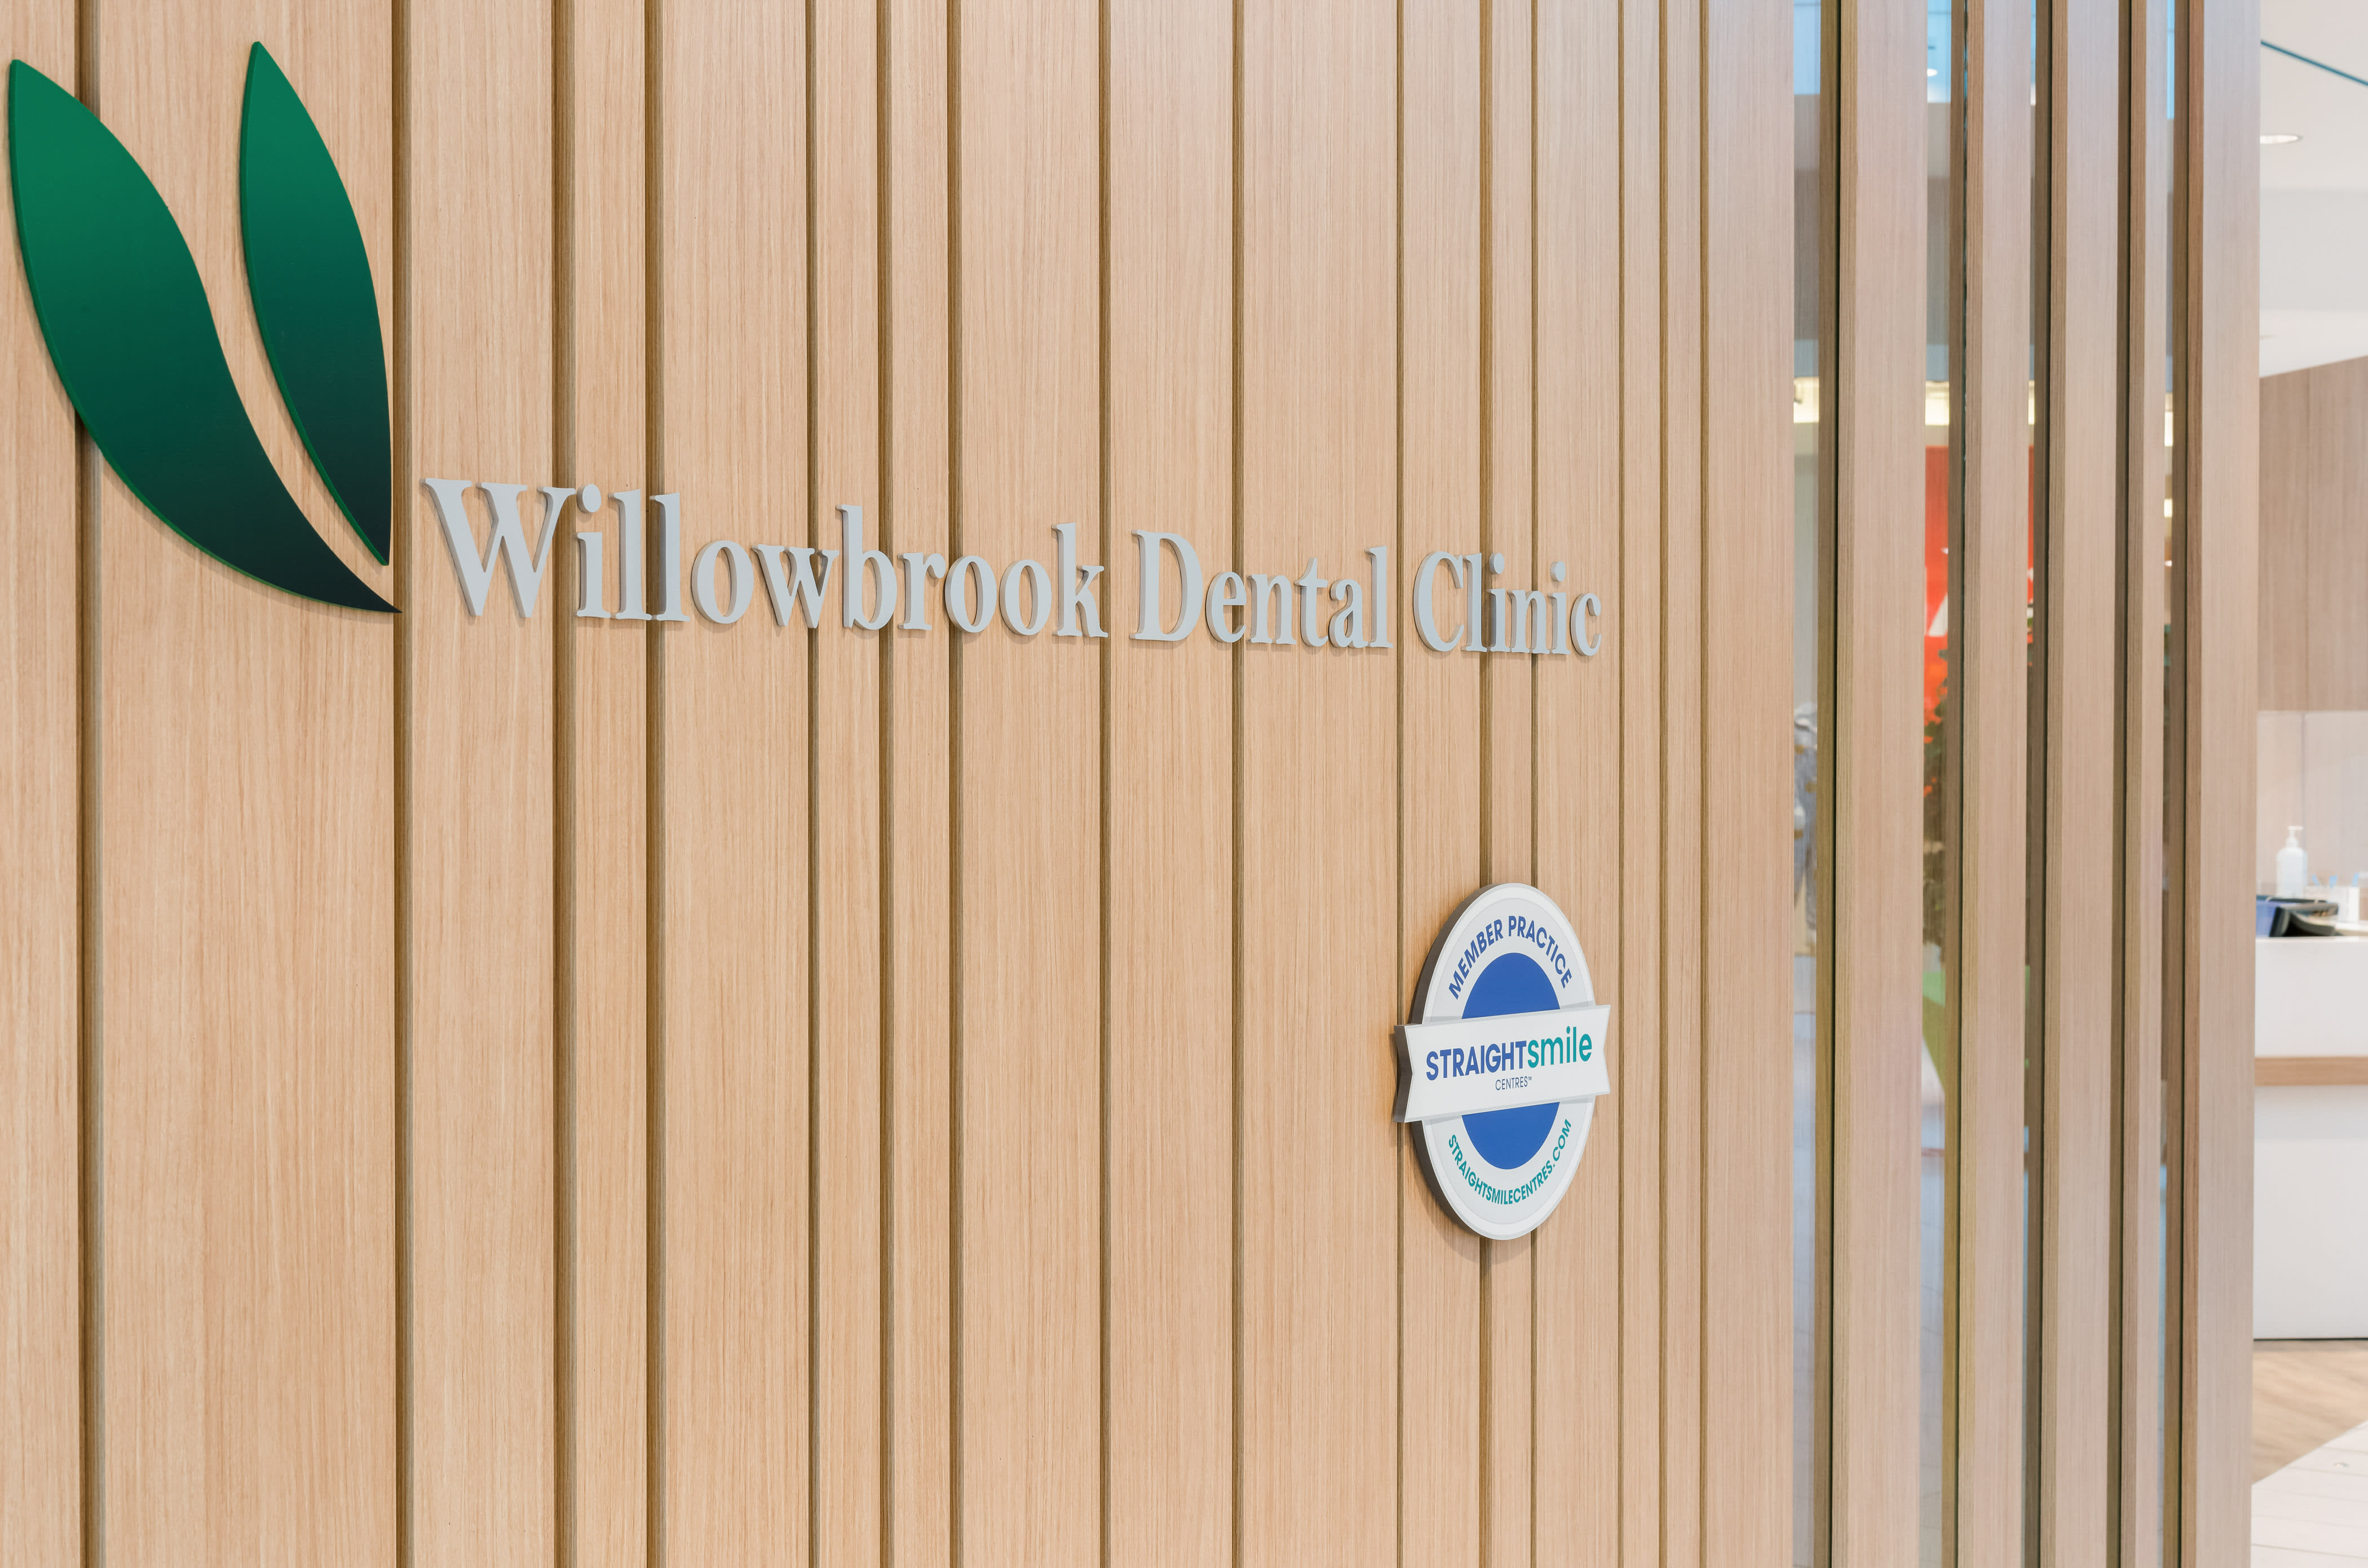 Willowbrook Dental Clinic